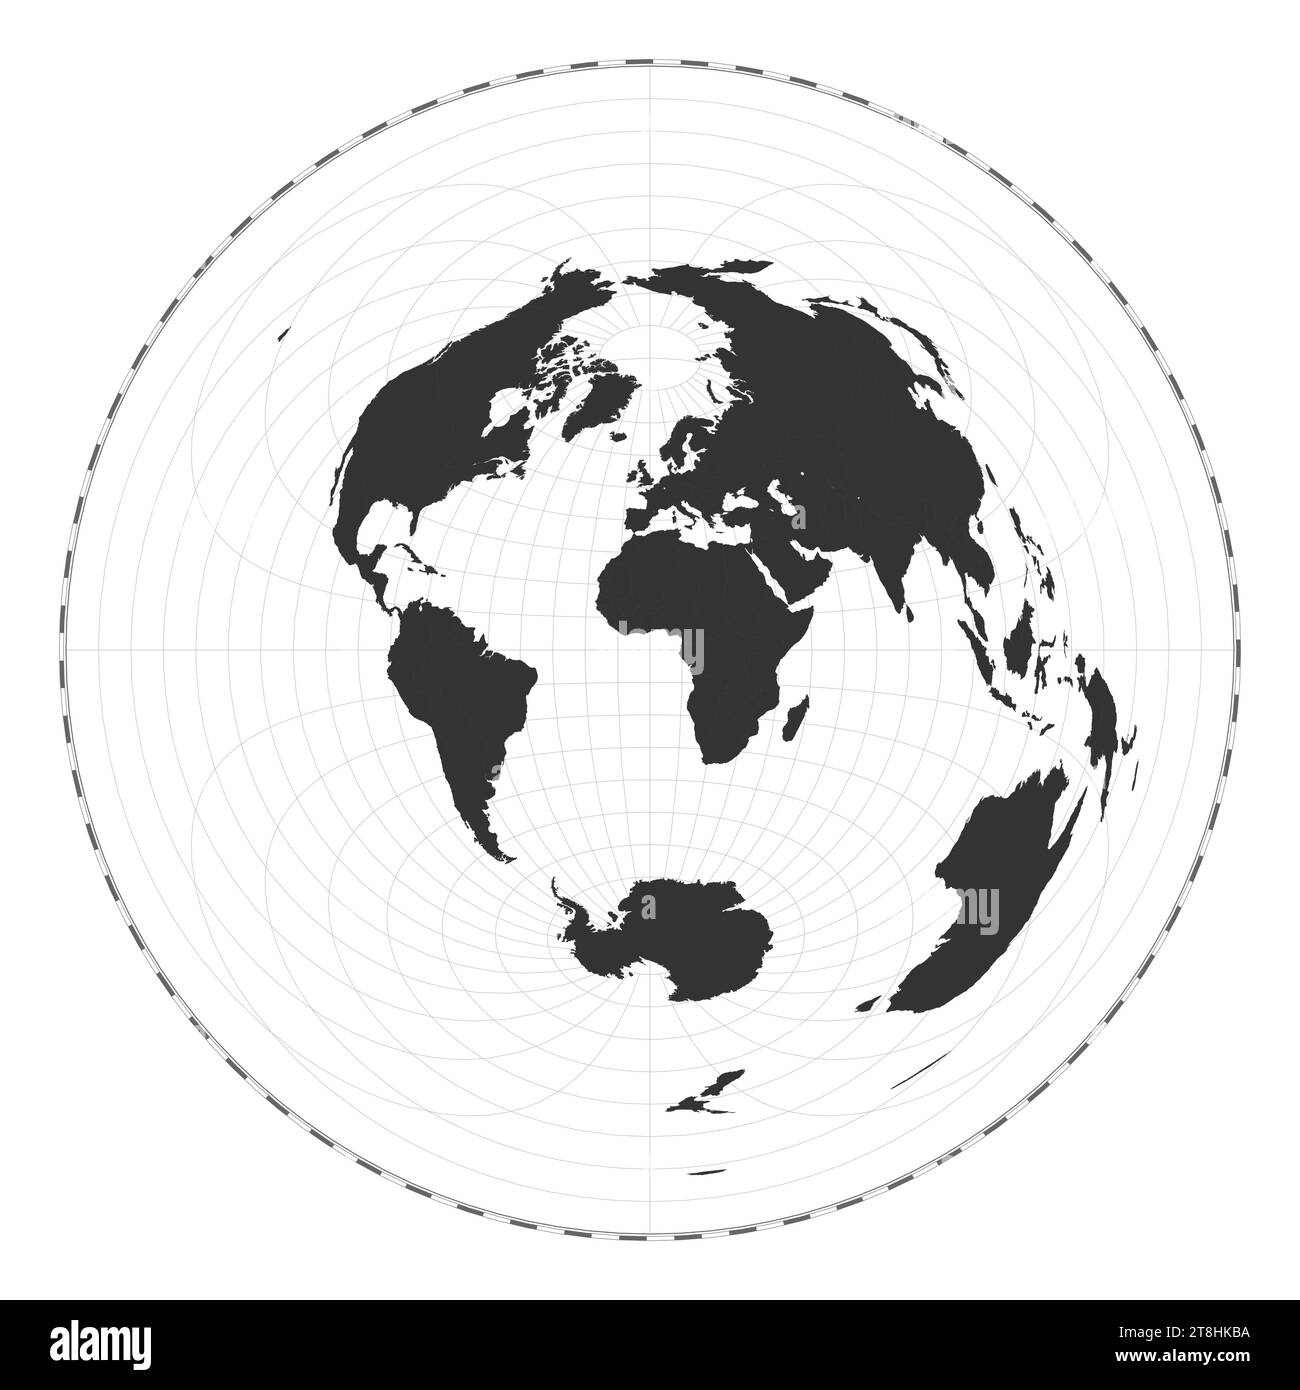 Vector Mapa Del Mundo Proyección Equidistante Azimutal Mapa Geográfico De Mundo Llano Con 0393